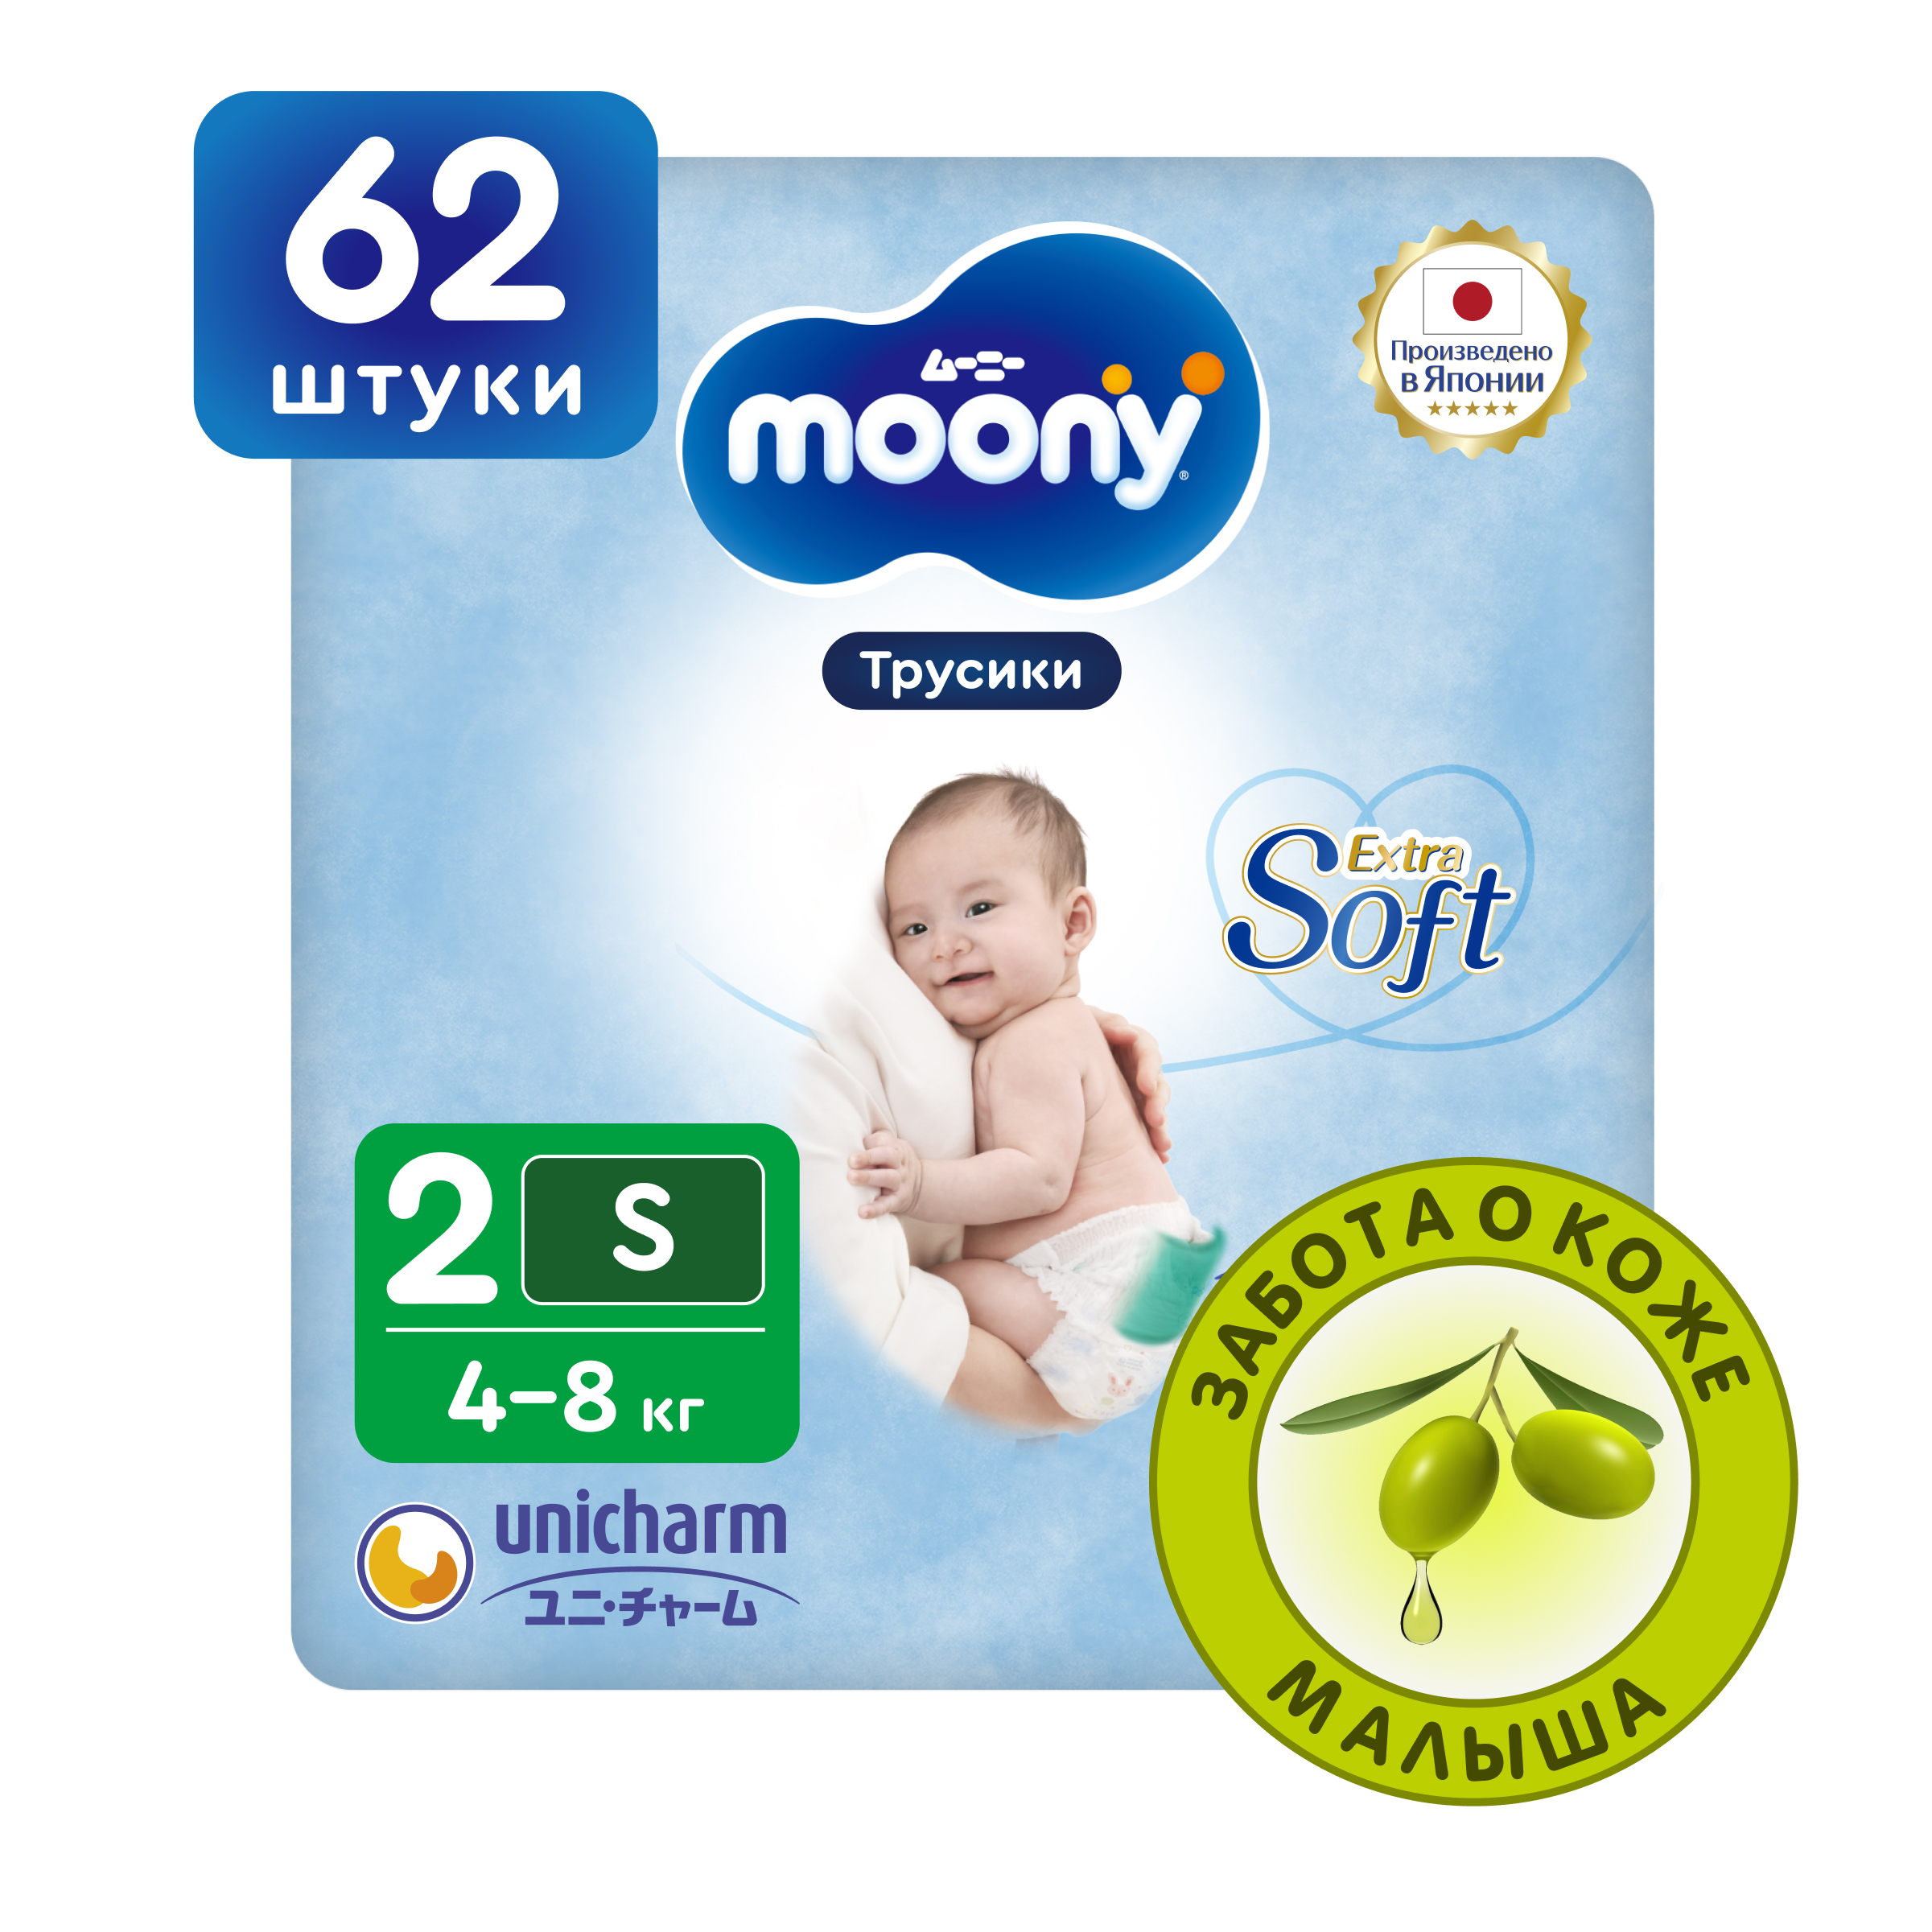 Японские подгузники трусики для новорожденных Moony Extra Soft 2 S, 4-8 кг, 62 шт японские подгузники для новорожденных moony organic 2 s 4 8 кг 14 шт